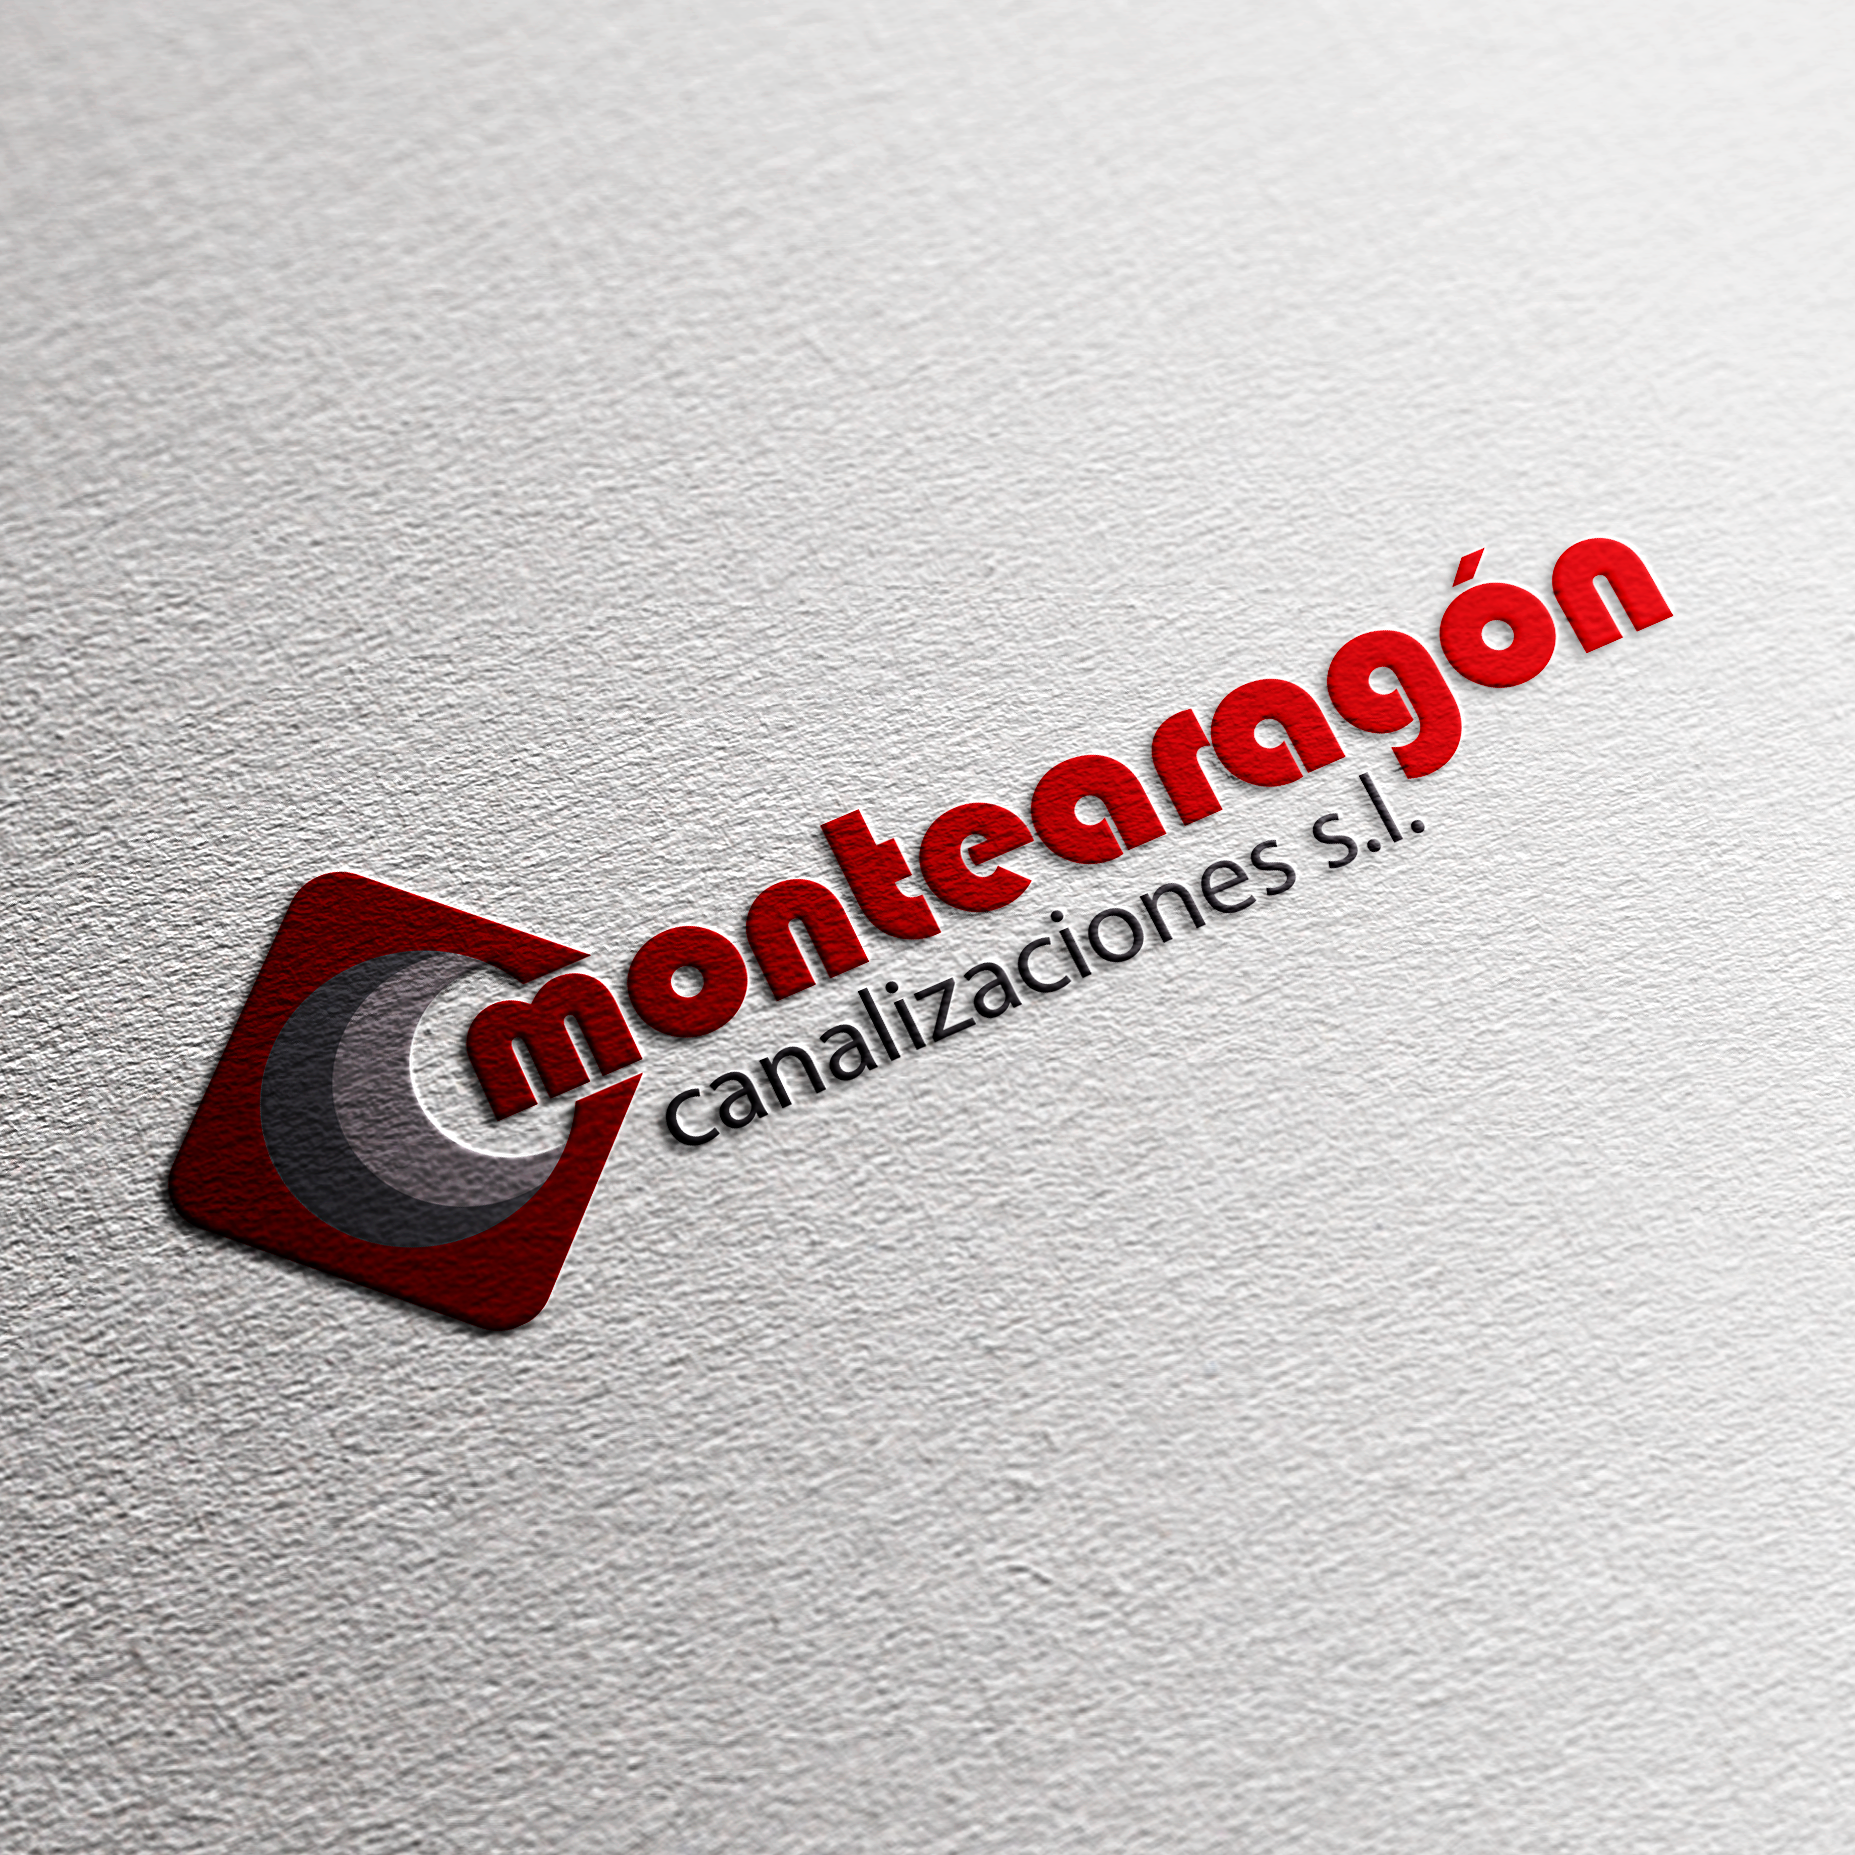 MontearagonCanalizaciones-logo